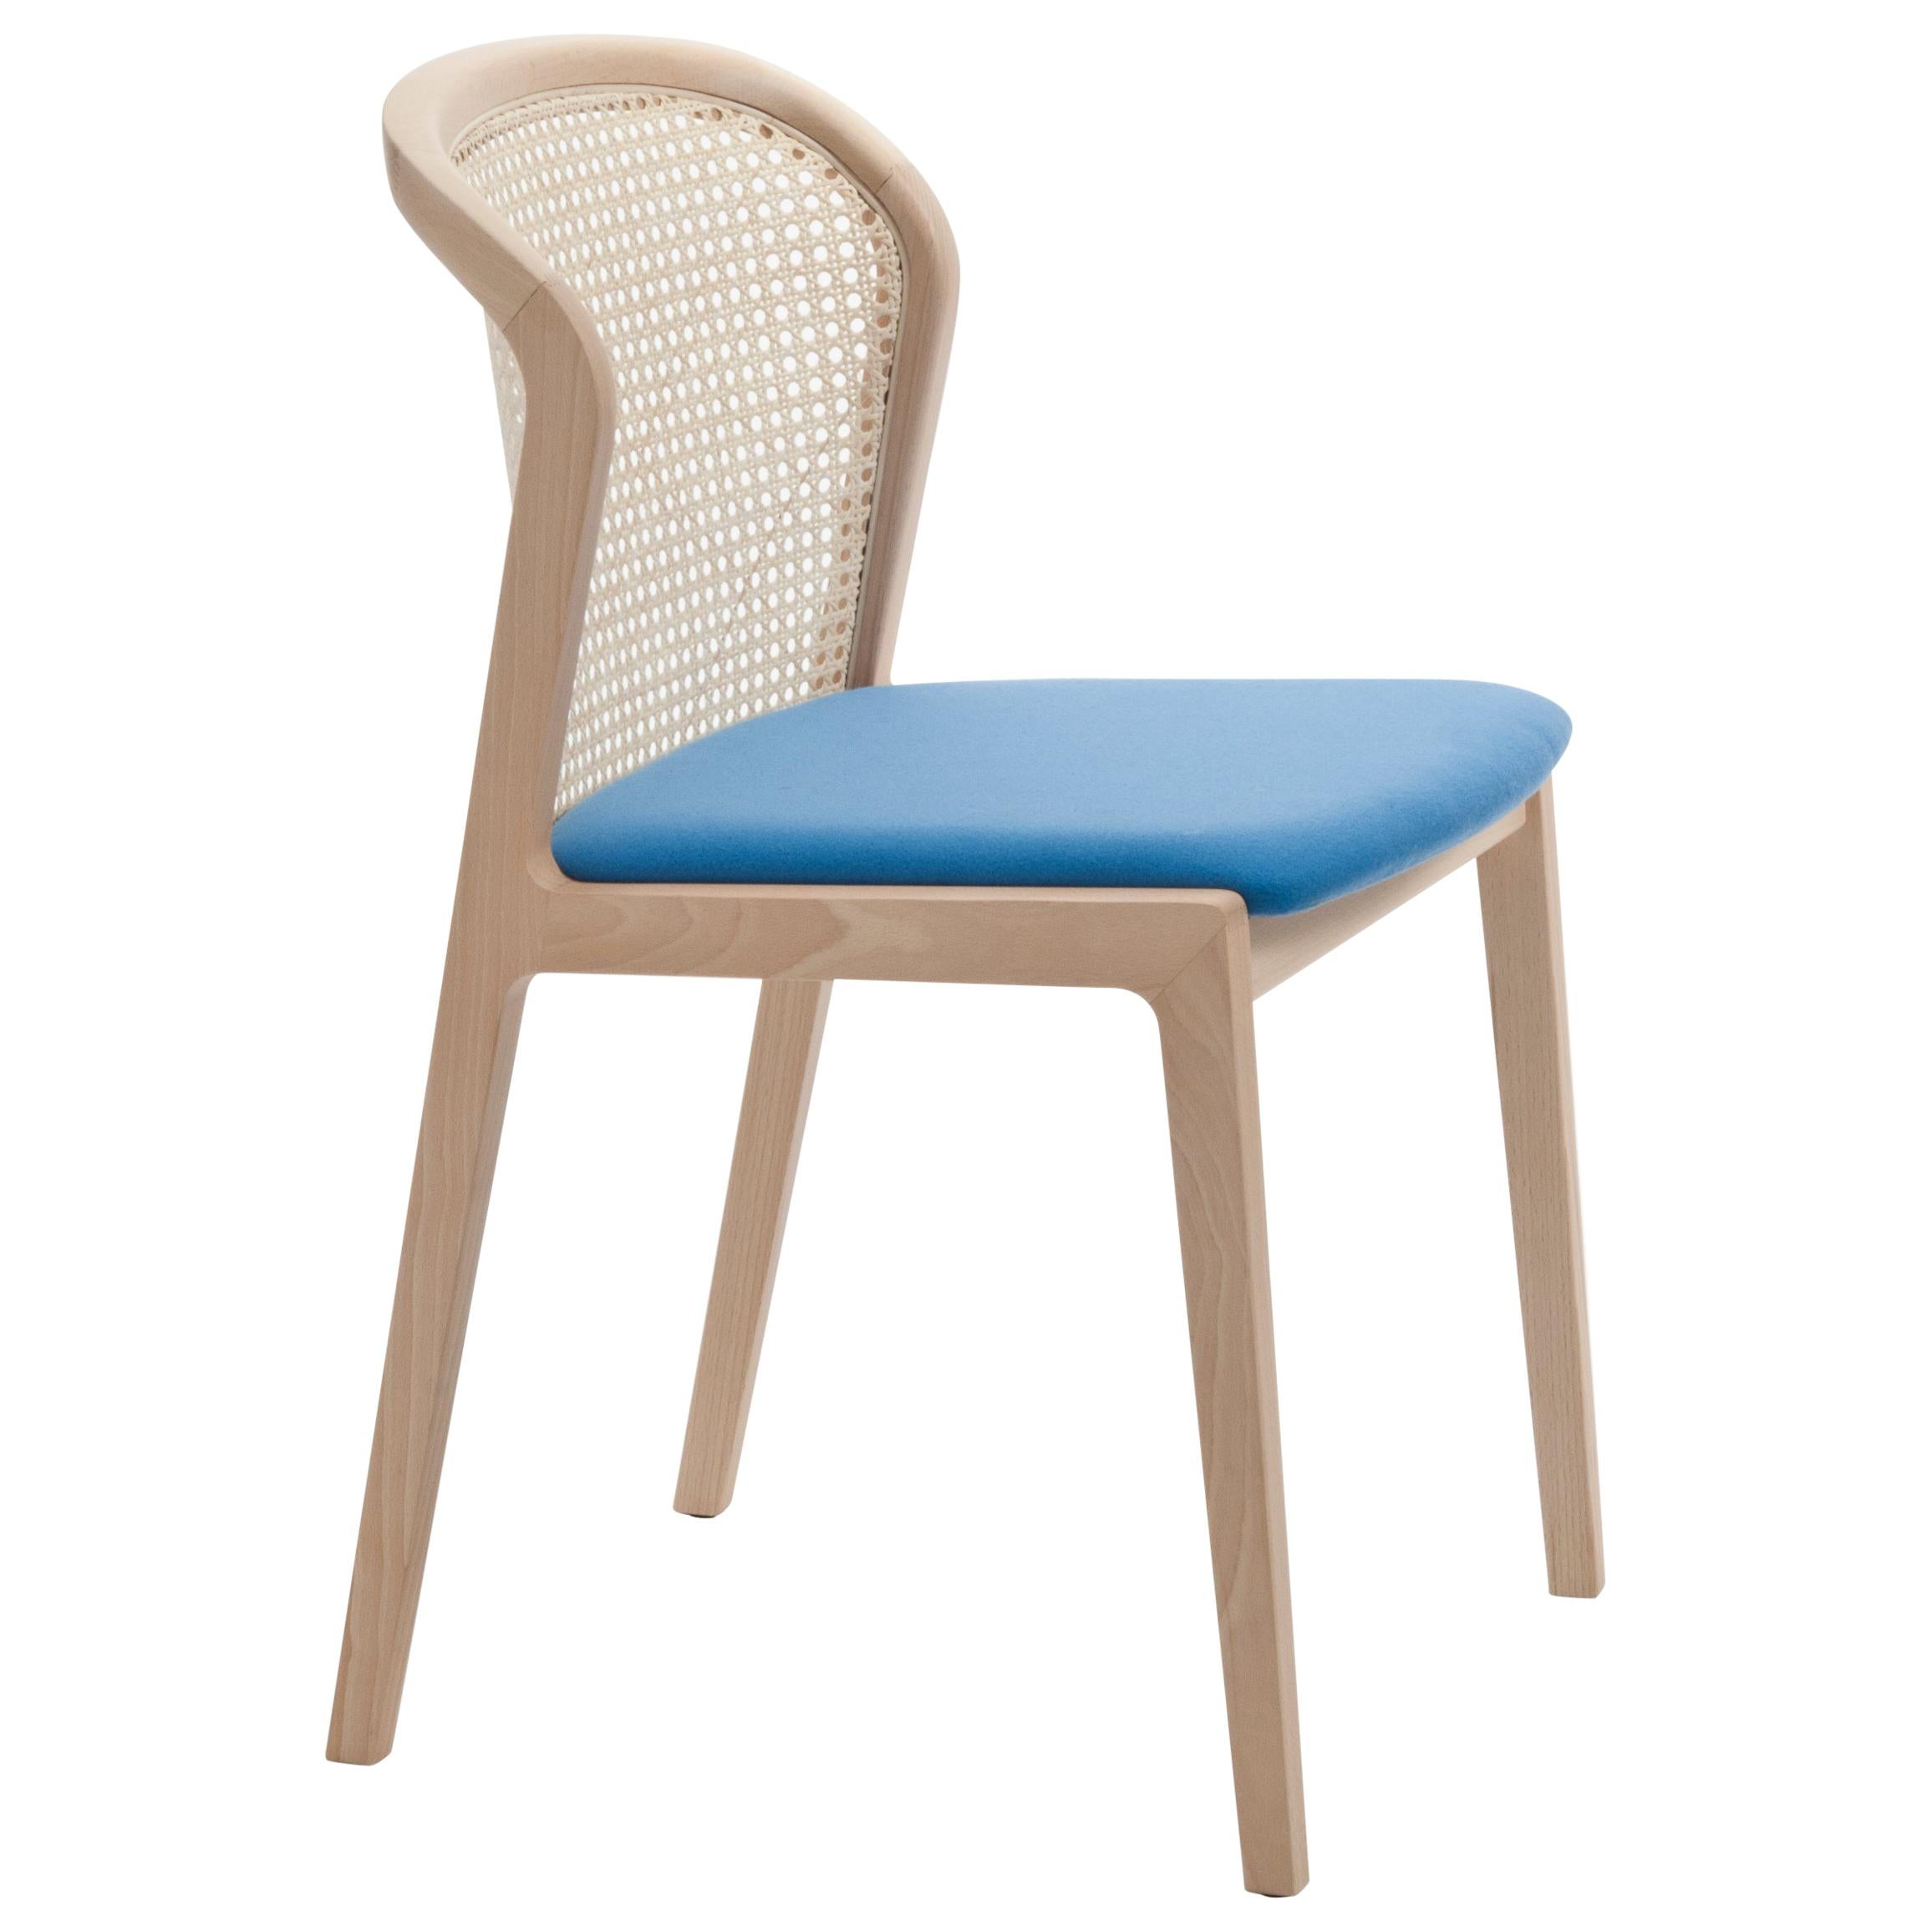 Chaise Vienna de Col, design moderne en bois et paille, assise tapissée azurée en vente